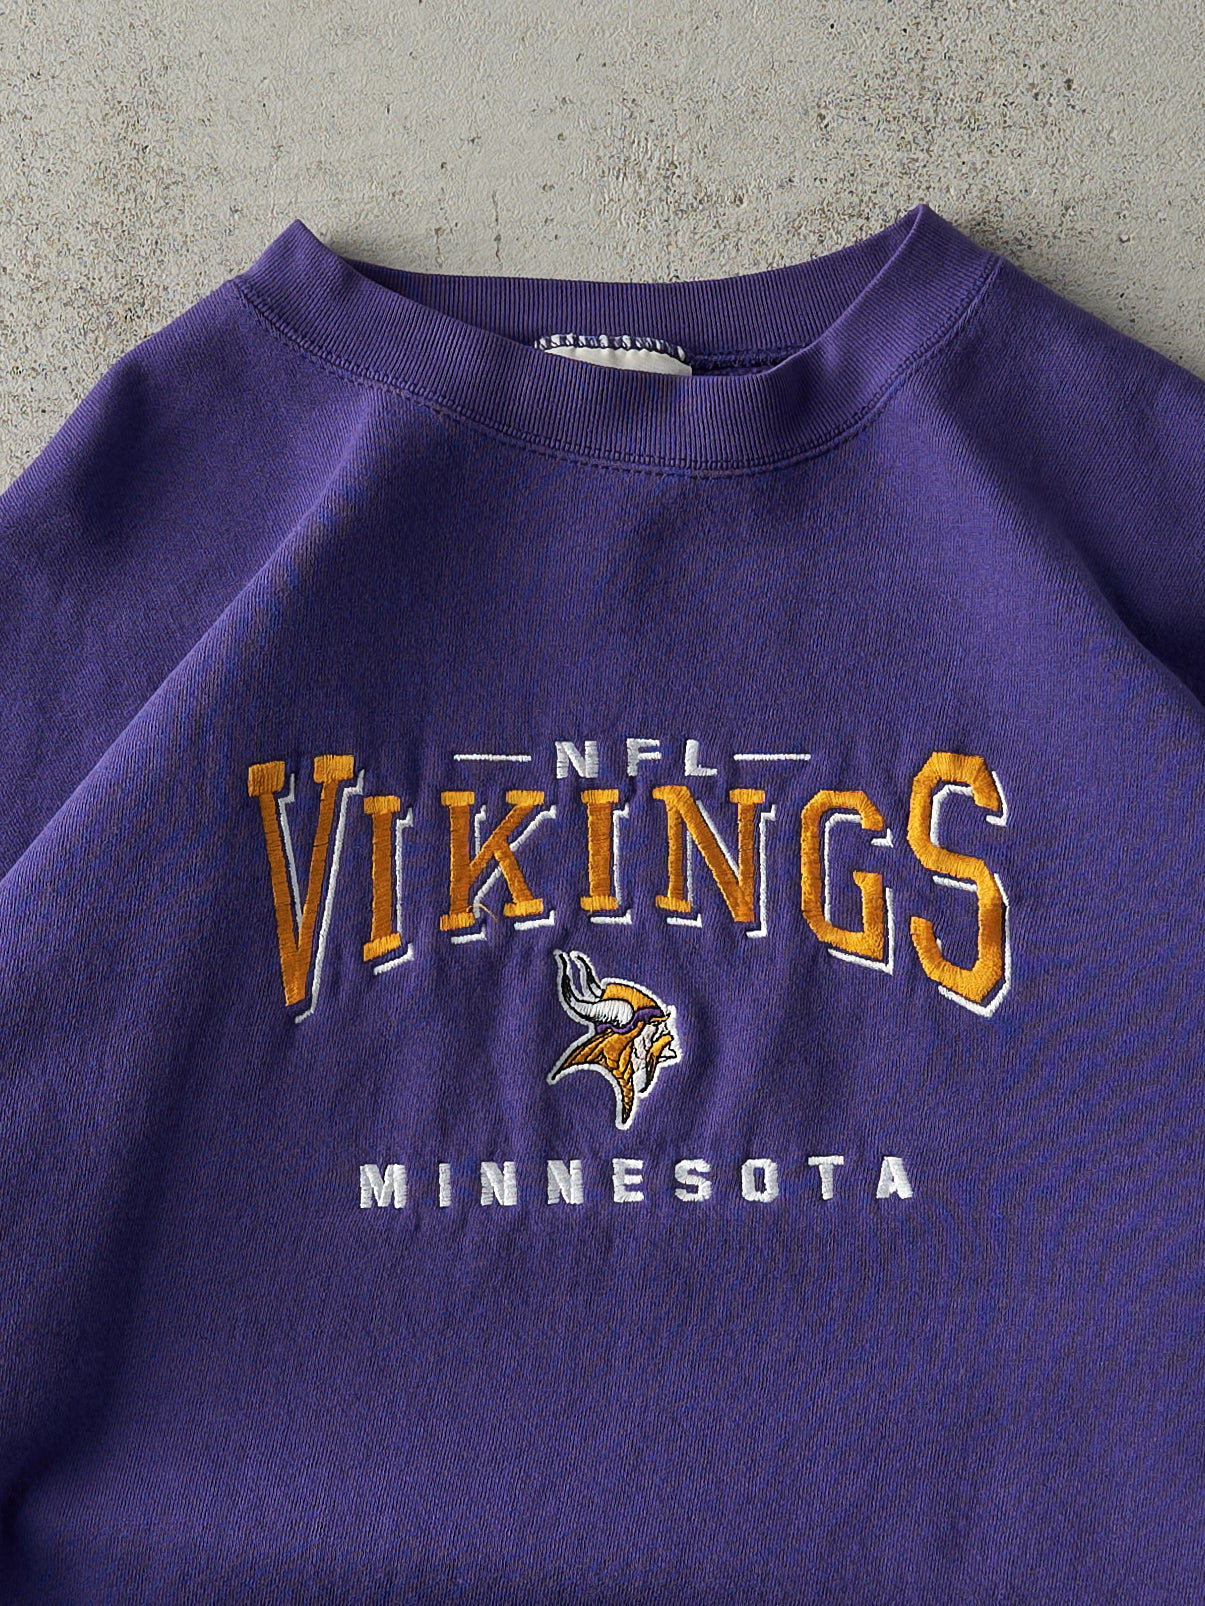 Vintage 90s Purple Embroidered Minnesota Vikings Crewneck (L)